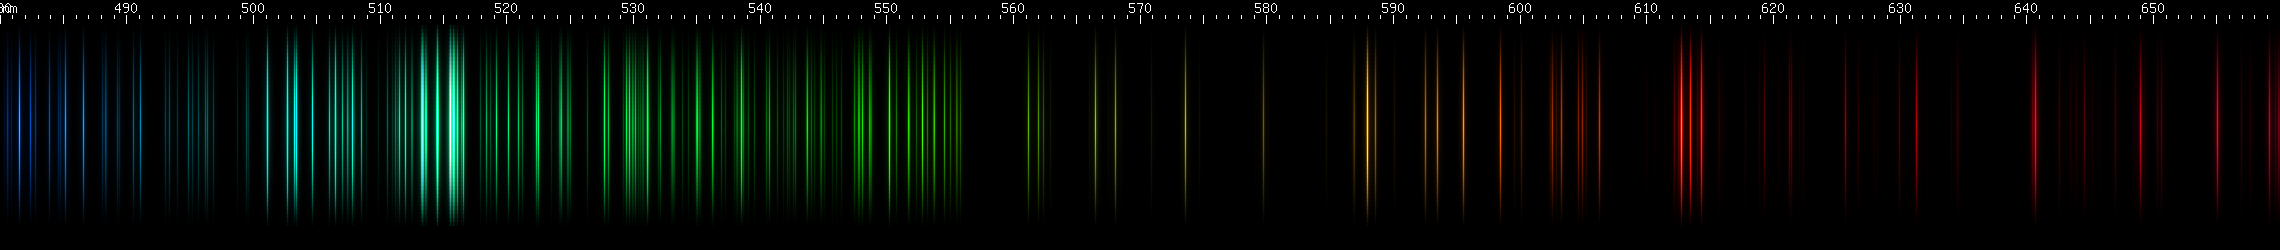 Spectral lines of Zirconium.